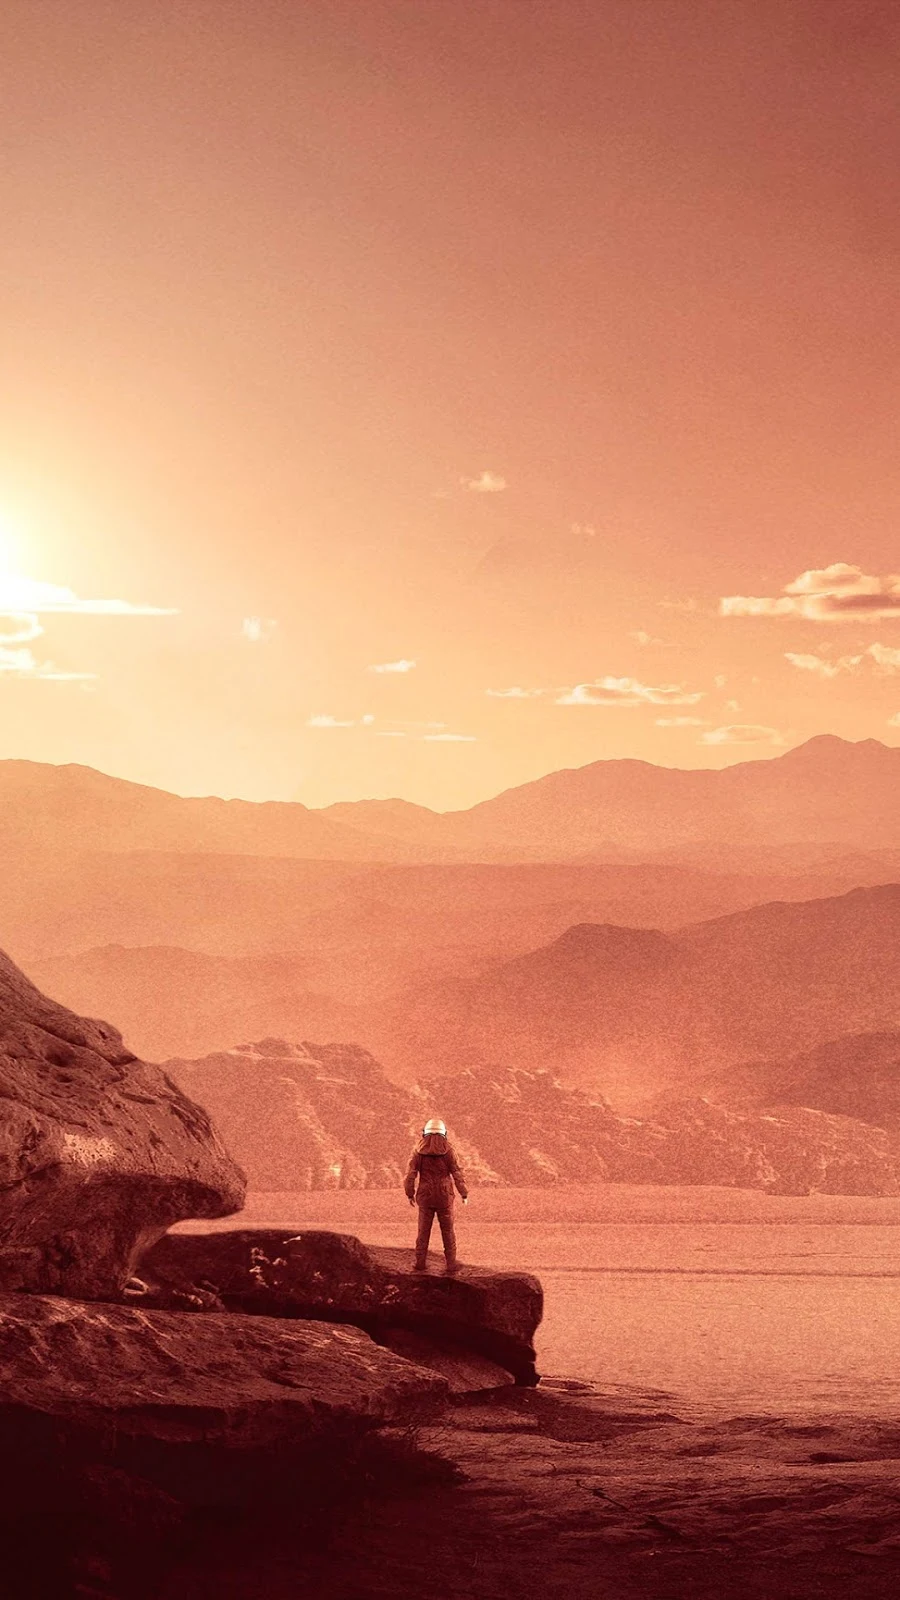 Papel de parede grátis Primeira Viagem para Marte para PC, Notebook, iPhone, Android e Tablet.